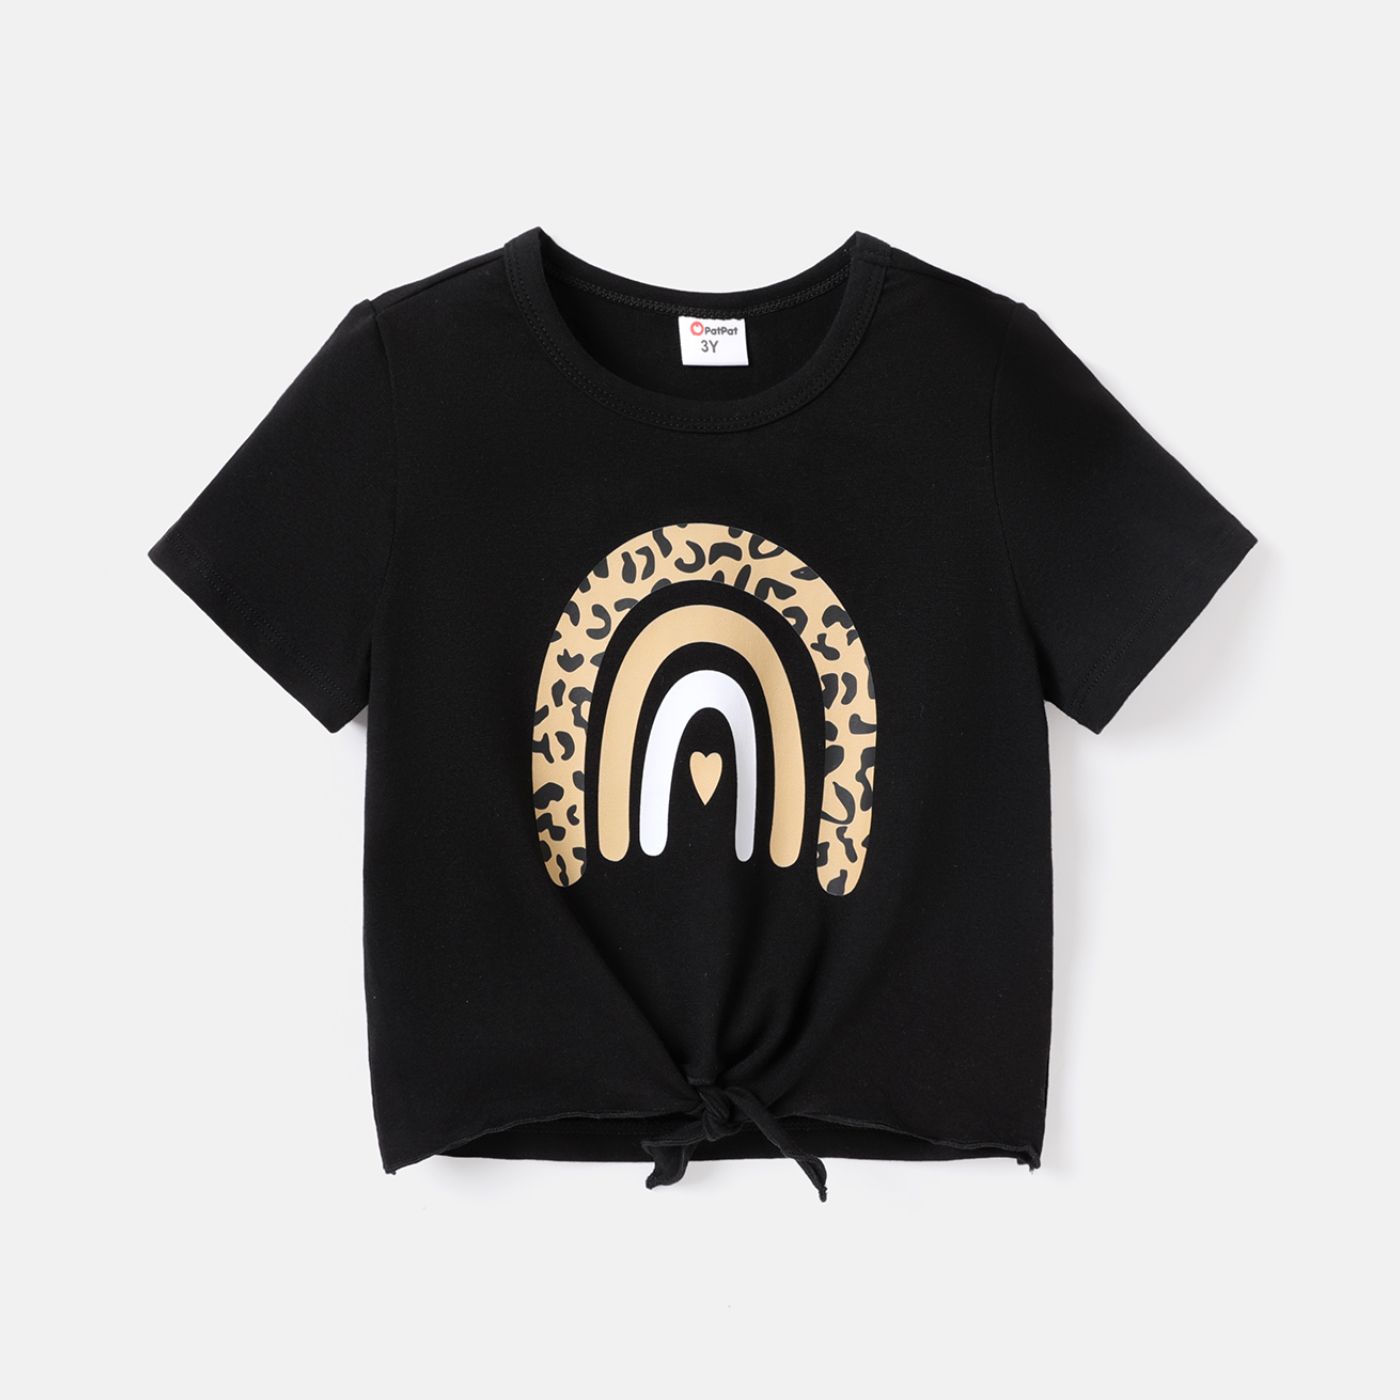 T-shirt En Coton à Manches Courtes Avec Imprimé Arc-en-ciel Pour Bébé Fille